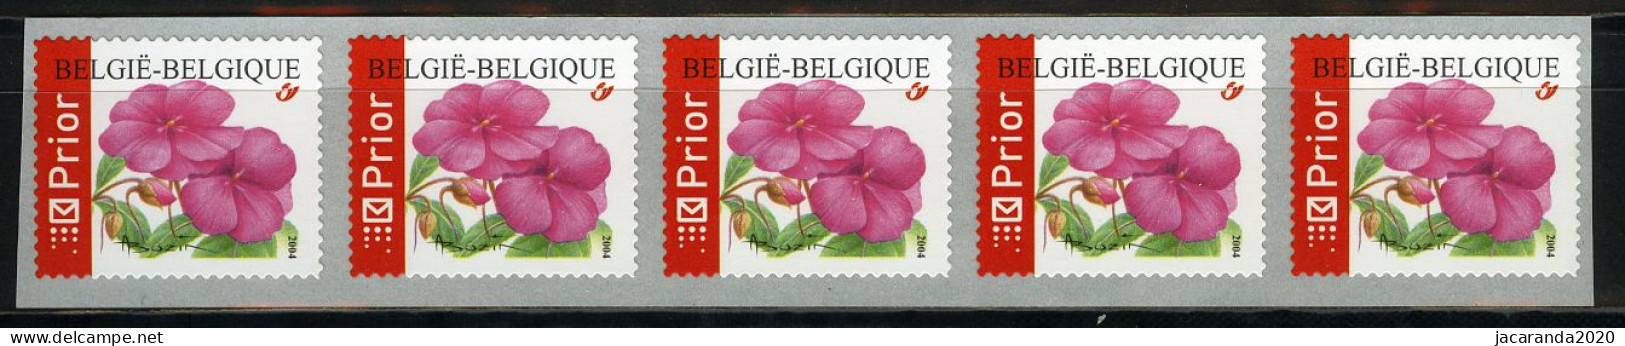 België R110 - Bloemen - Buzin (3347) - Impatiens - Vlijtig Liesje - 2004 - Strook Van 5 - Bande De 5  - Franqueo